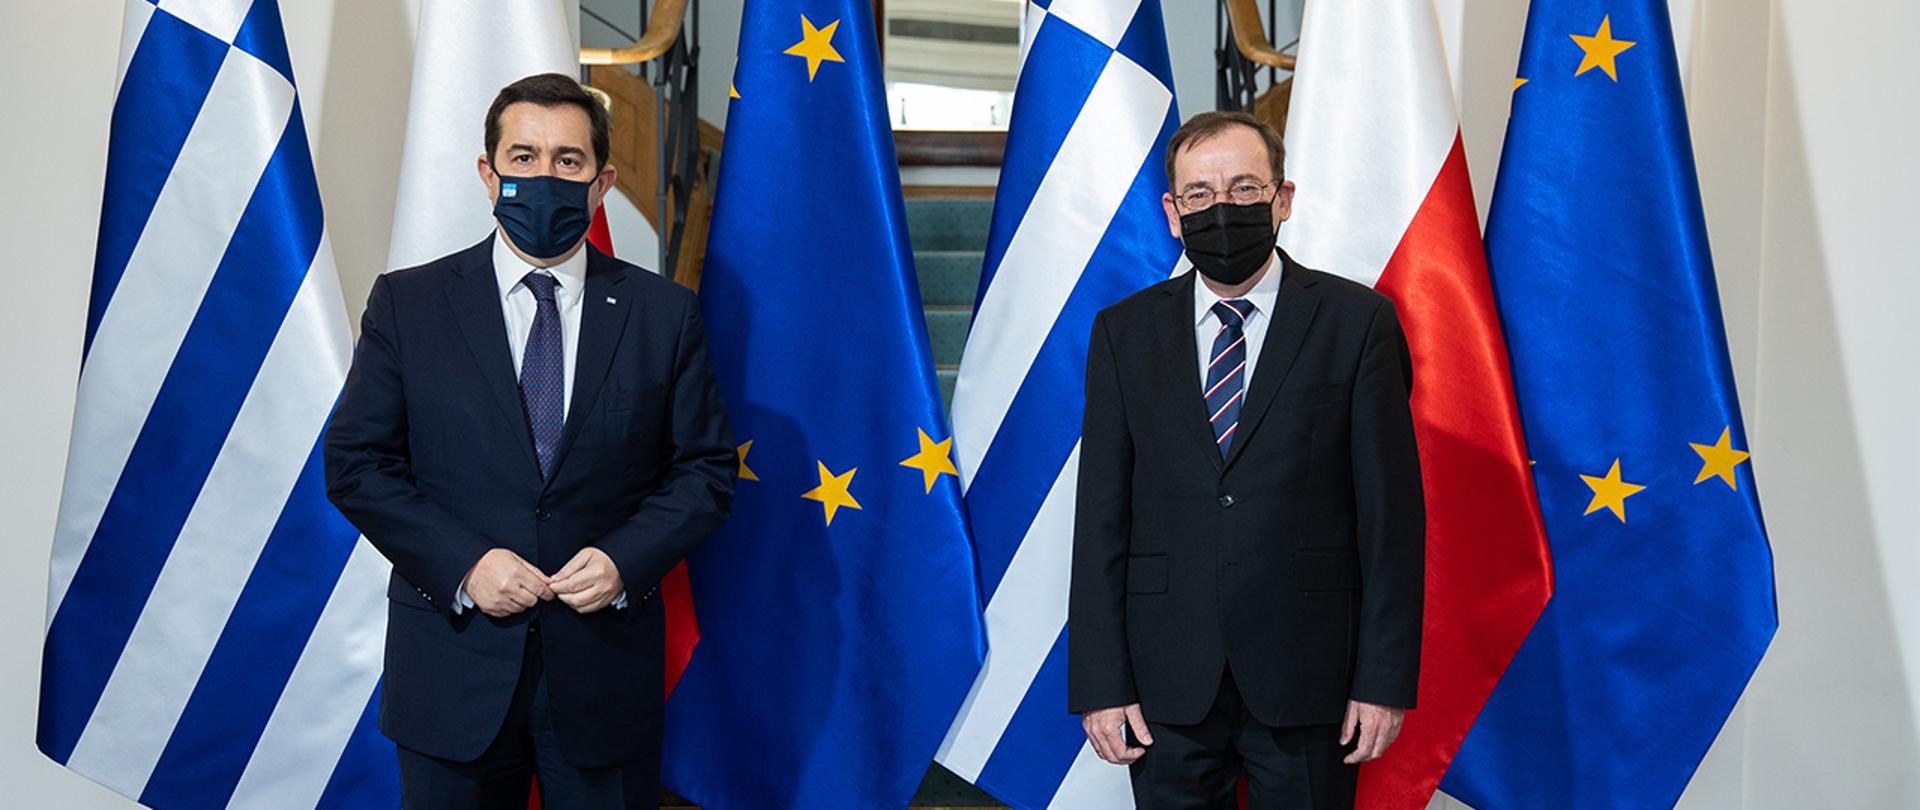 Na zdjęciu widać ministra Mariusza Kamińskiego i ministra ds. migracji i azylu Grecji Notisa Mitarachi stojących na tle flag Polski, Gracji i UE.